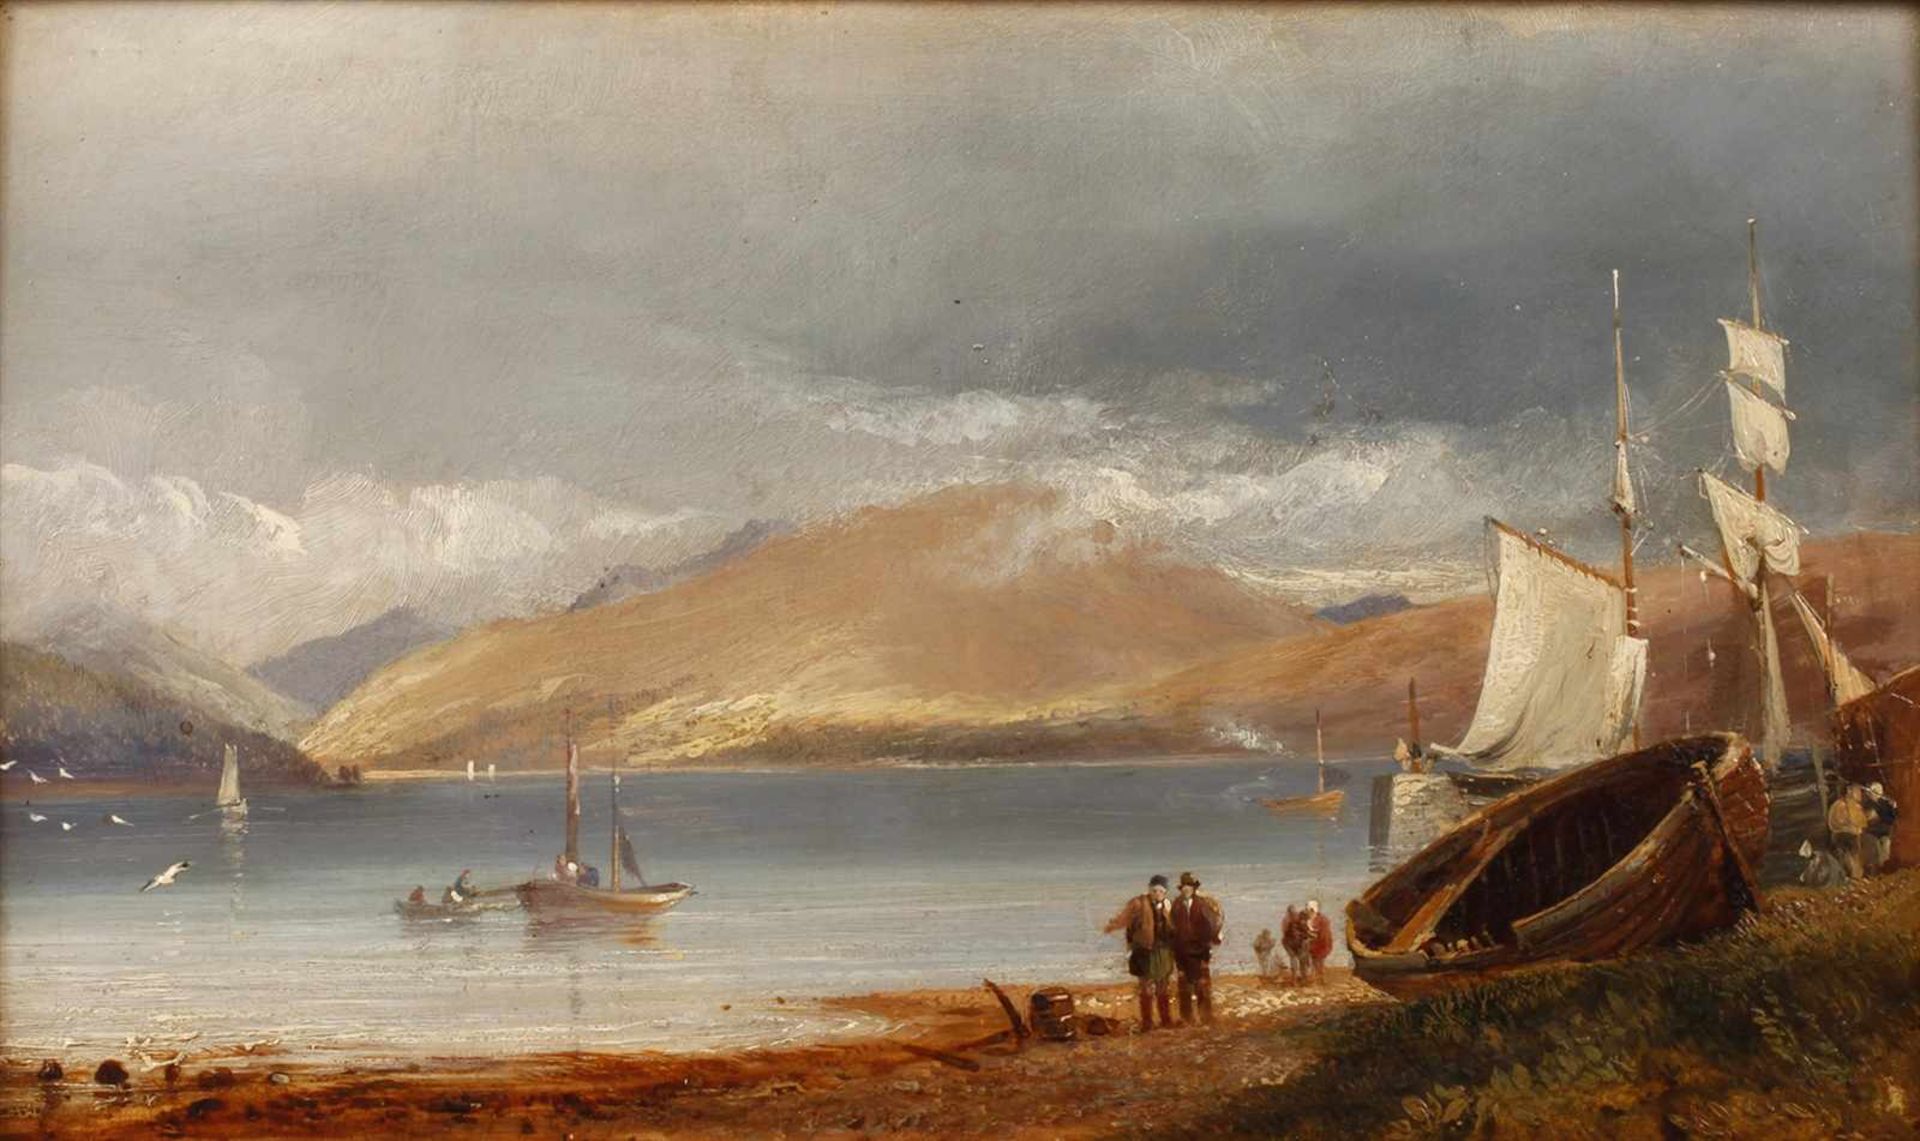 Samuel Bough, attr. Fischer am Strandzwischen Bergen gelegener See, mit einigen Segelbooten und im